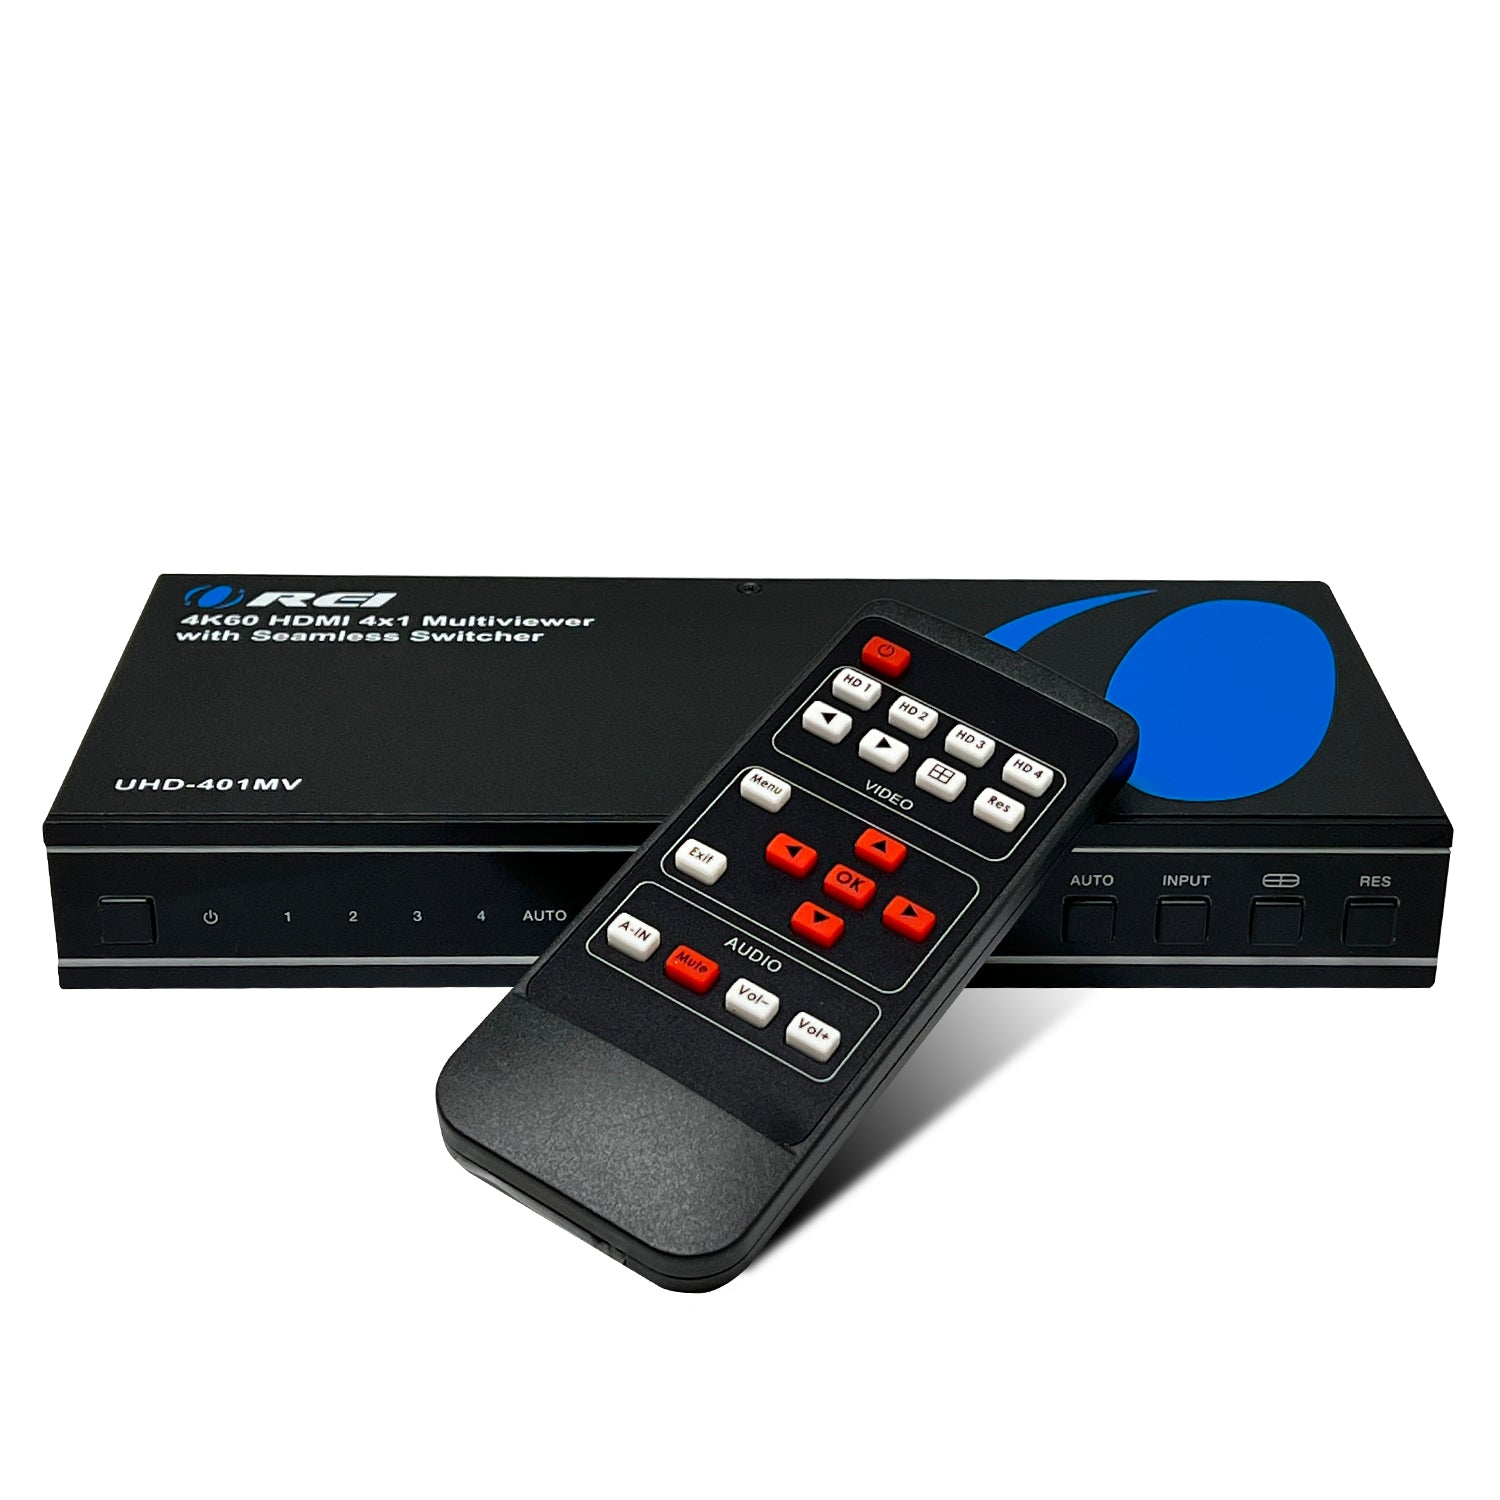 OREI 4K@60Hz 4X1 HDMI KVM Switch with RS-232 Control (UKM-401)